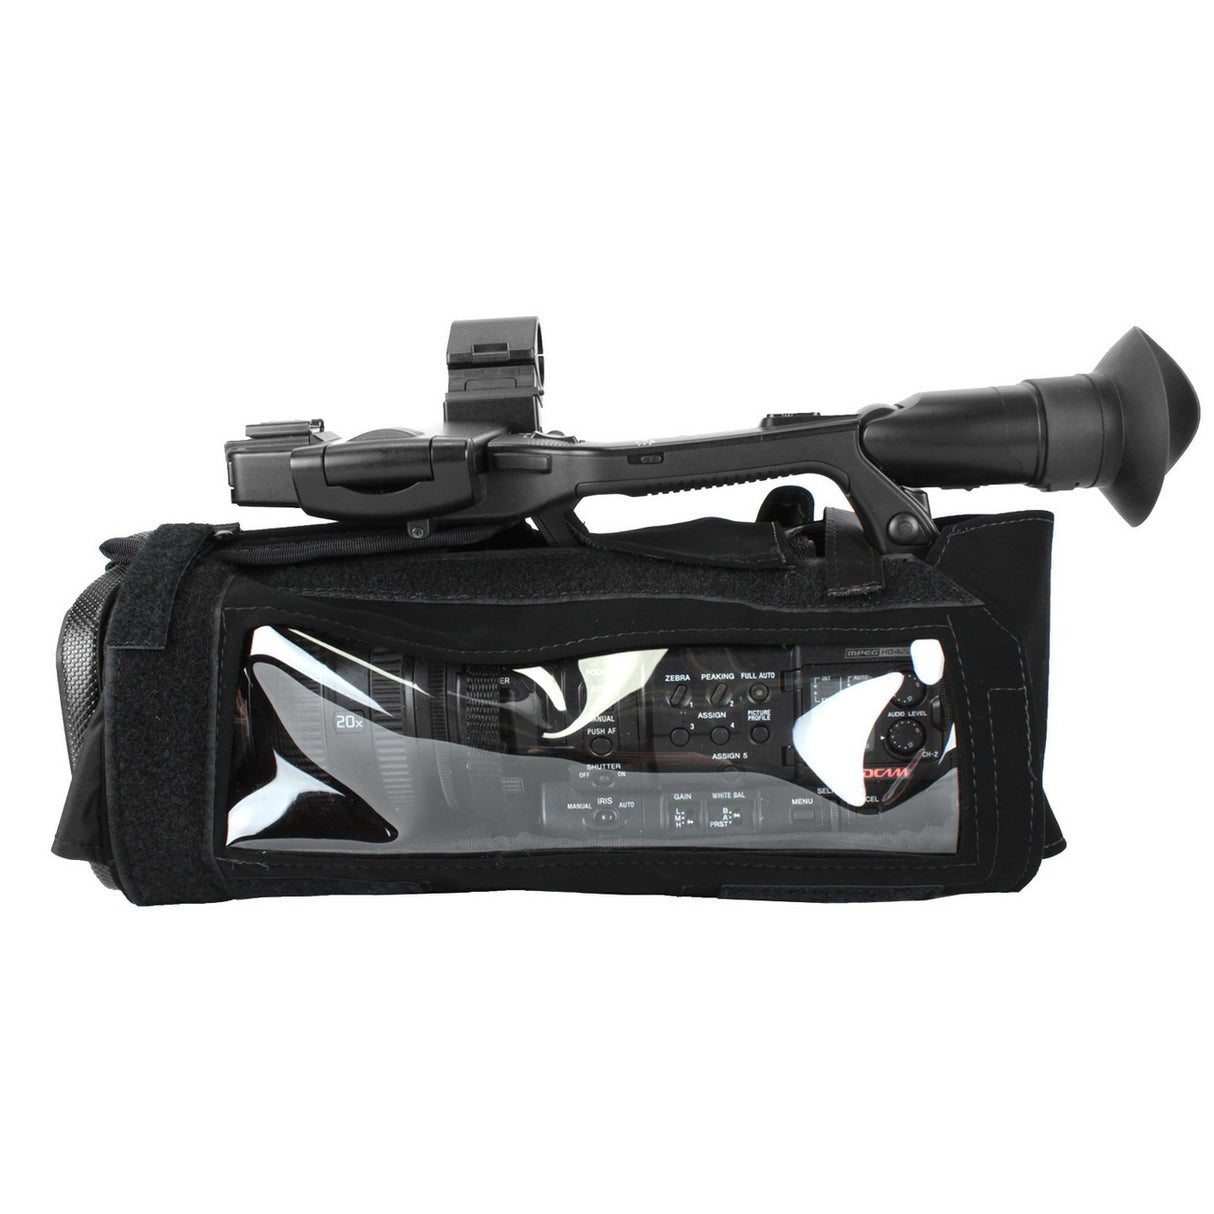 PortaBrace CBA-PXWZ150B Camera Body Armor Case for Sony PXW-Z150, Black